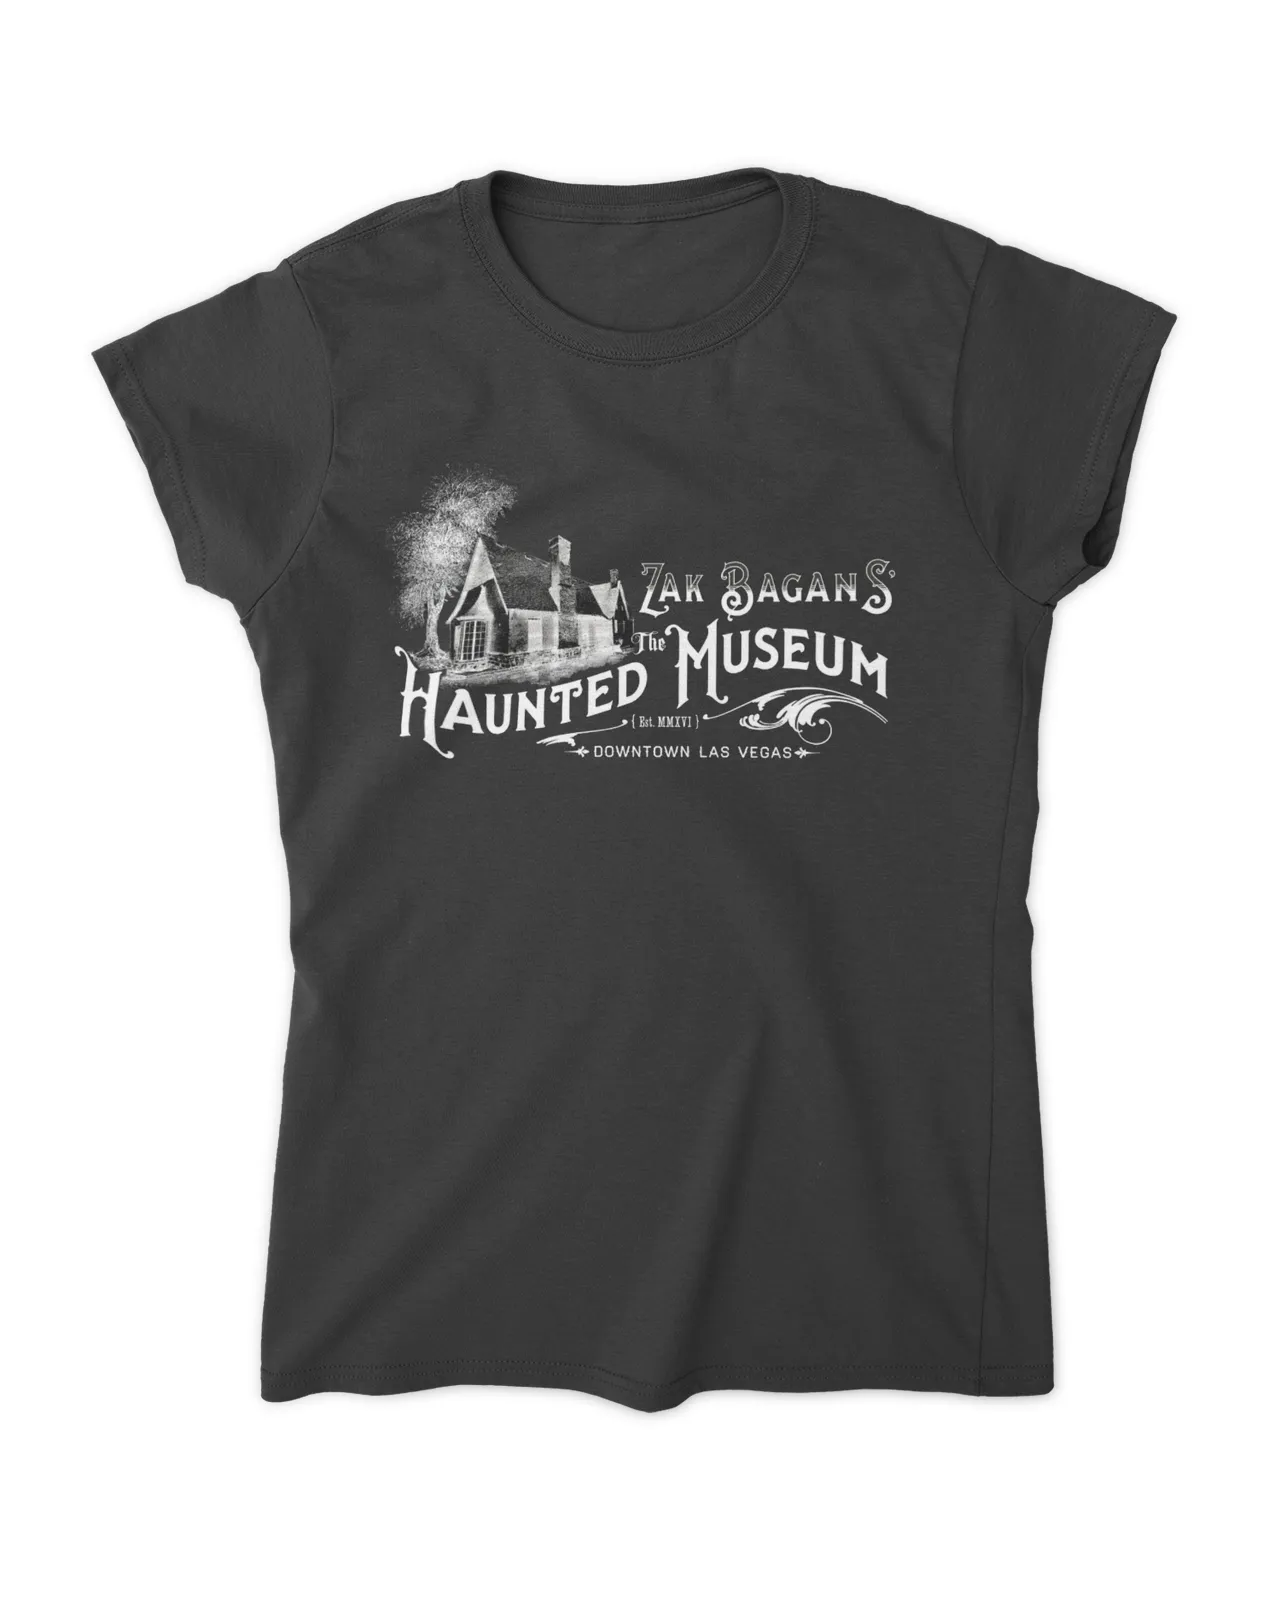 Zak Bagans Haunted Museum Shirt